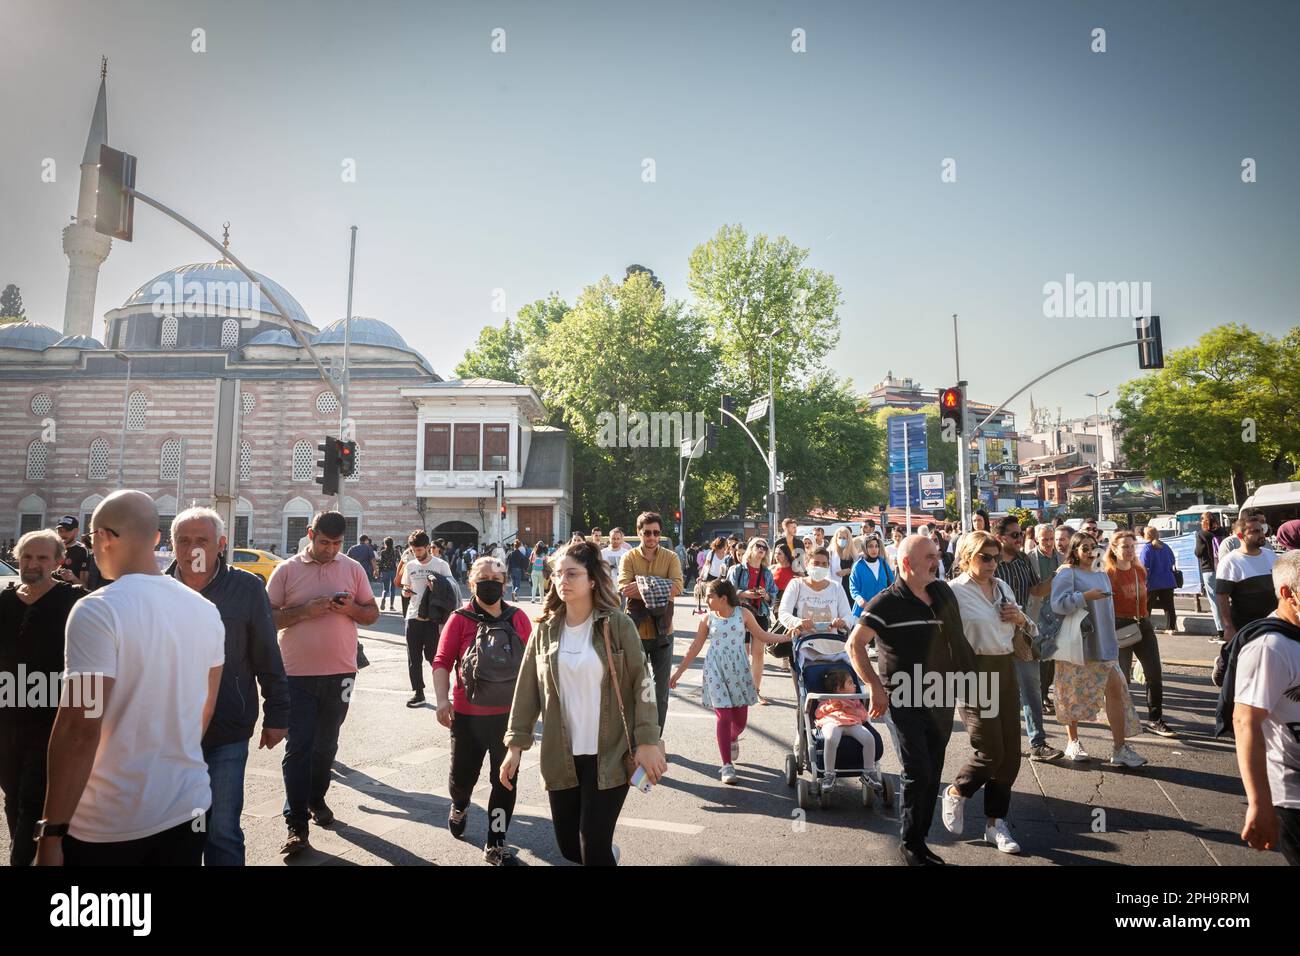 Foto di un passaggio pedonale turco a Istanbul, in turchia, con una folla di persone che passano. Foto Stock